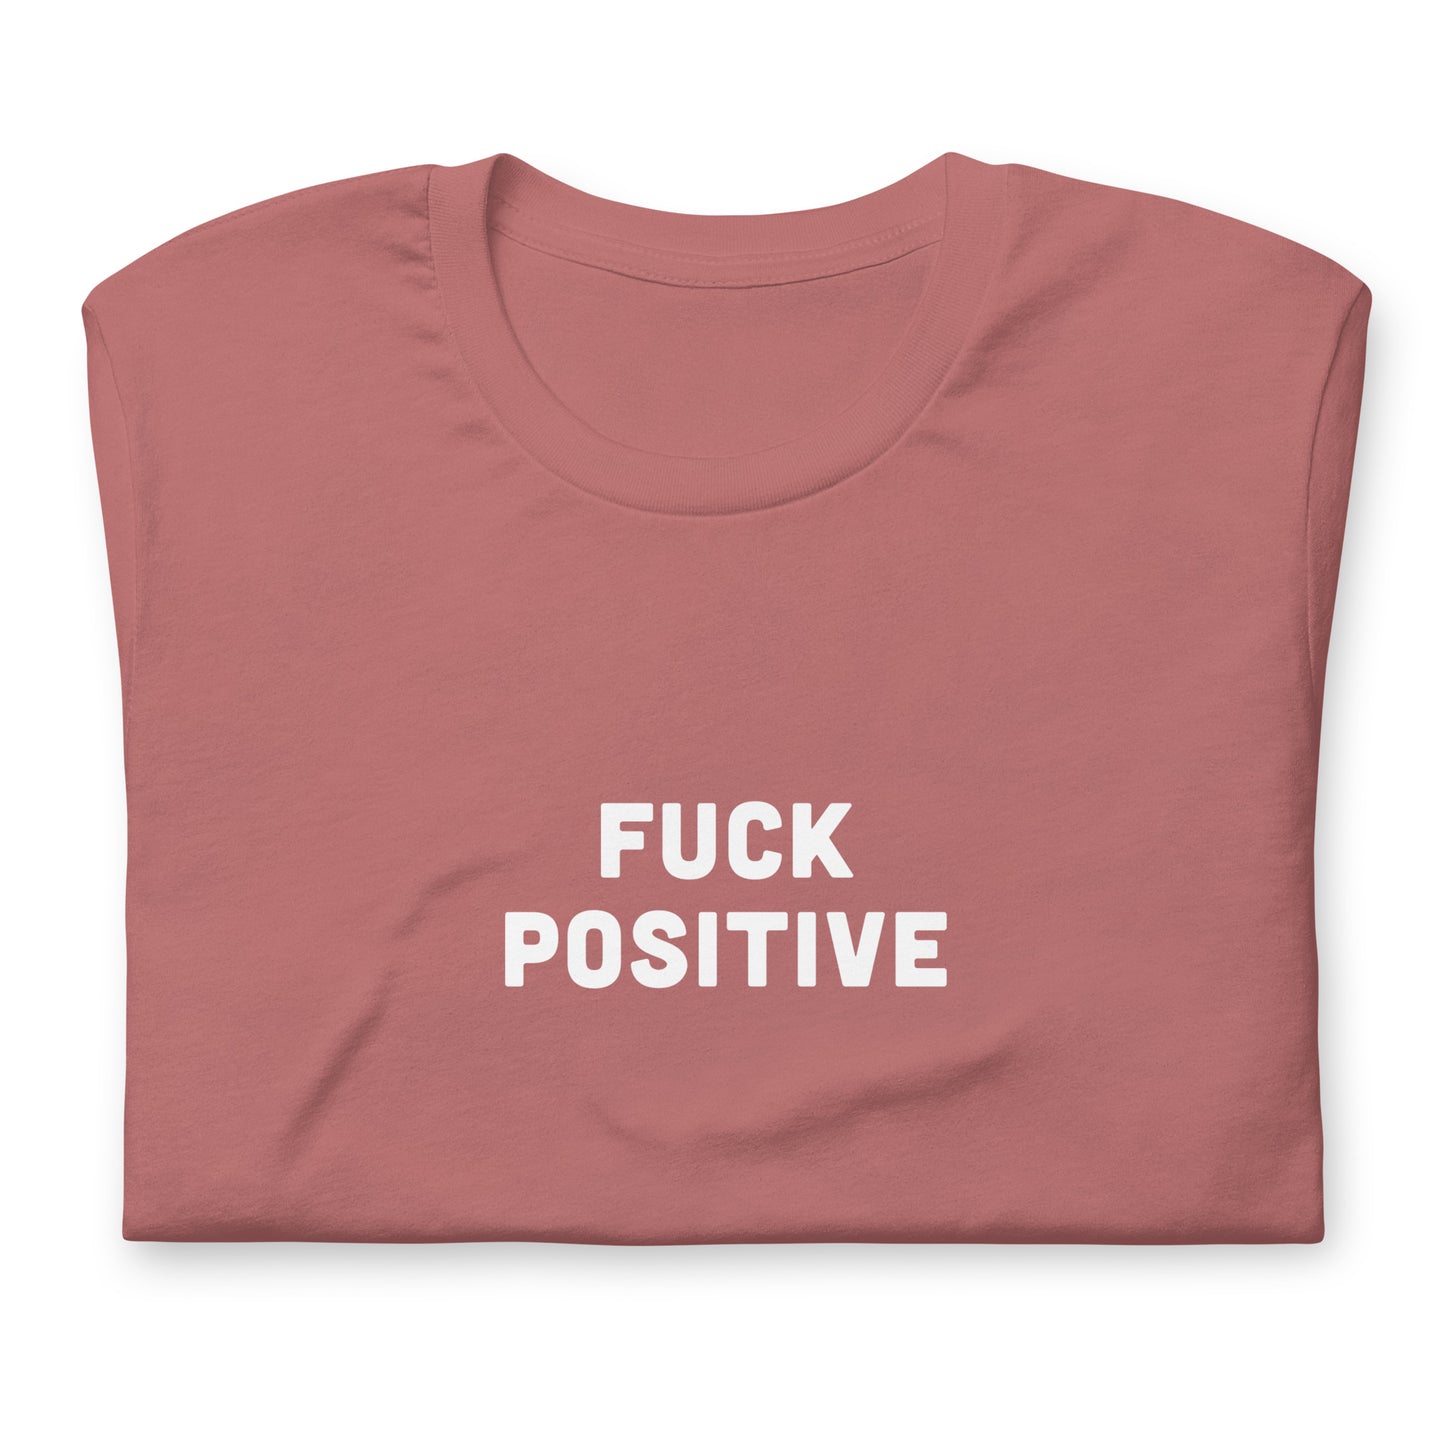 Fuck Positive T-Shirt Size 2XL Color Navy